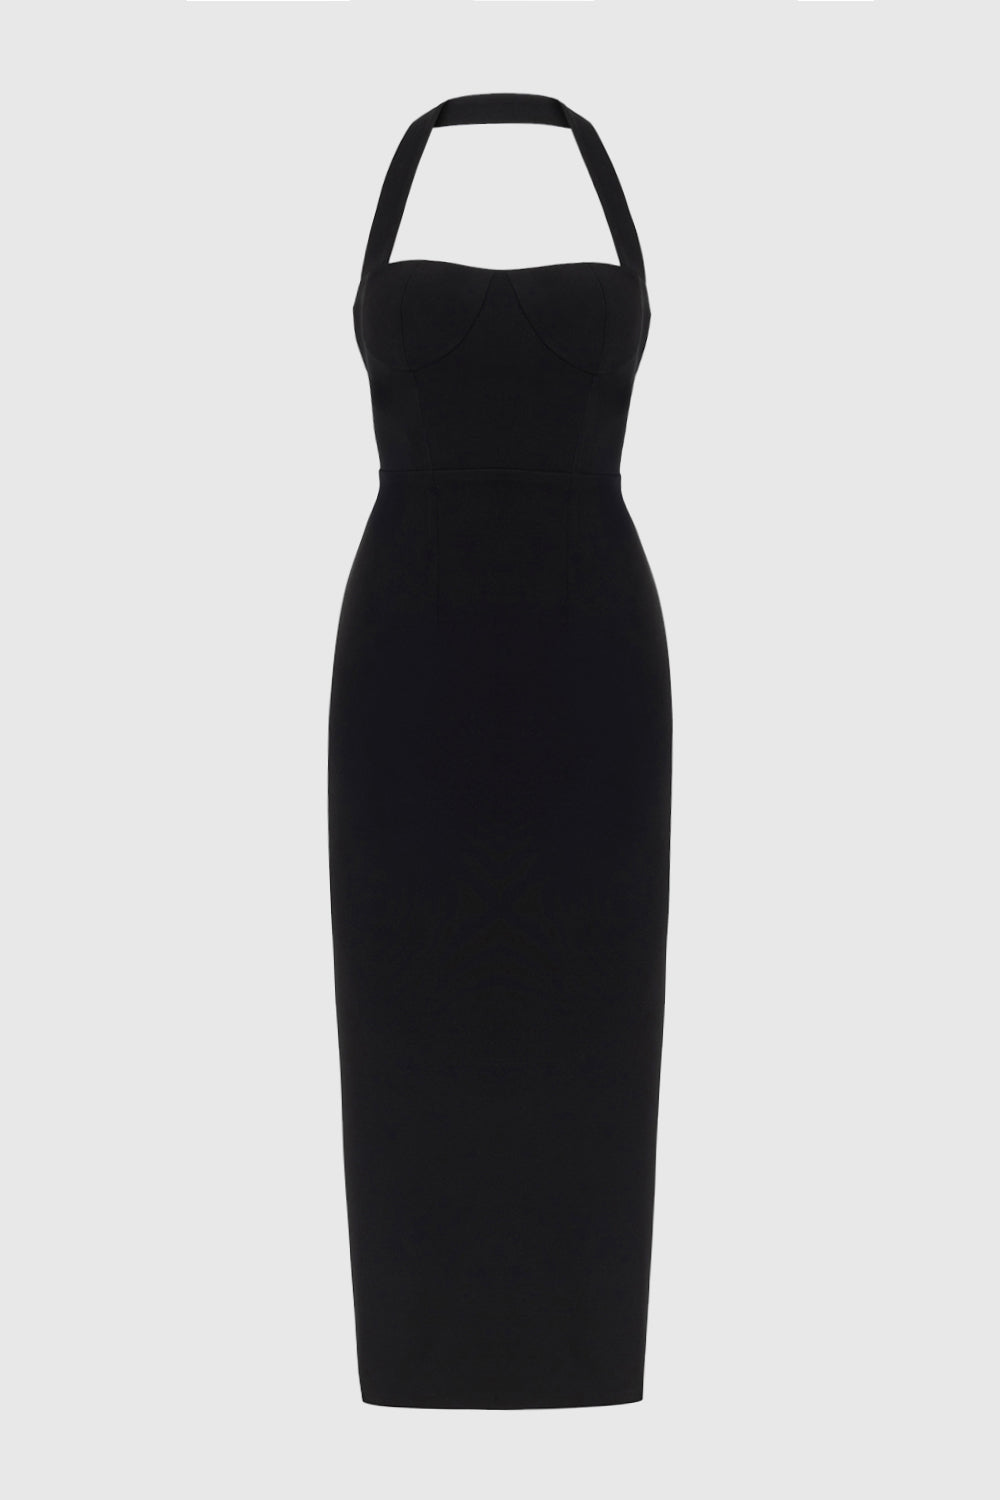 Zoa Black Bustier Midi Dress